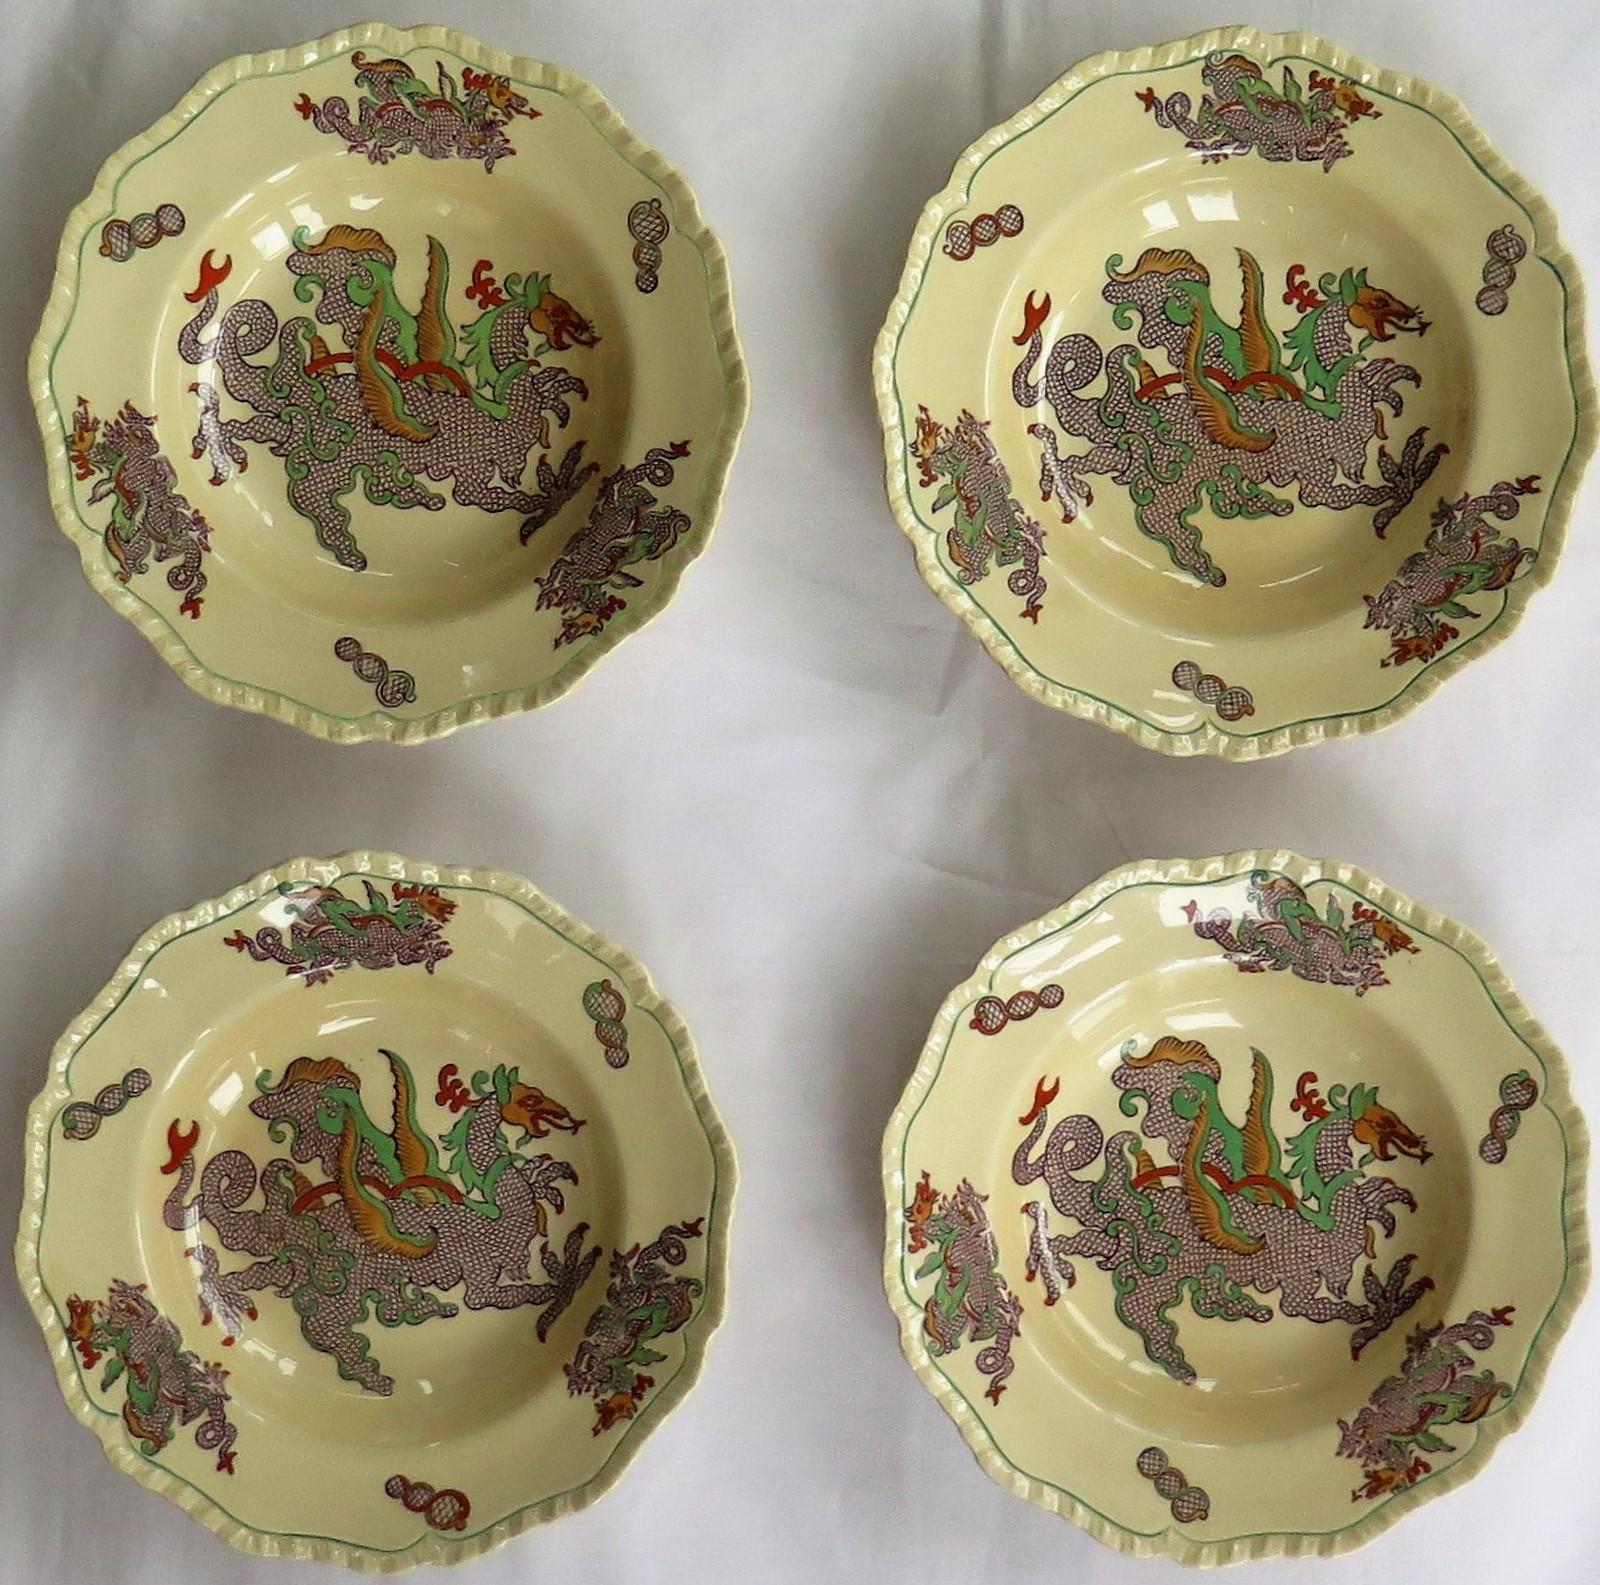 Voici un bel ensemble de QUATRE bols ou assiettes creuses de Mason's Ironstone, Angleterre, dans le motif du dragon chinois, datant de la fin du 19e siècle, vers 1900.

Les assiettes ou les bols sont de forme circulaire avec un bord moulé